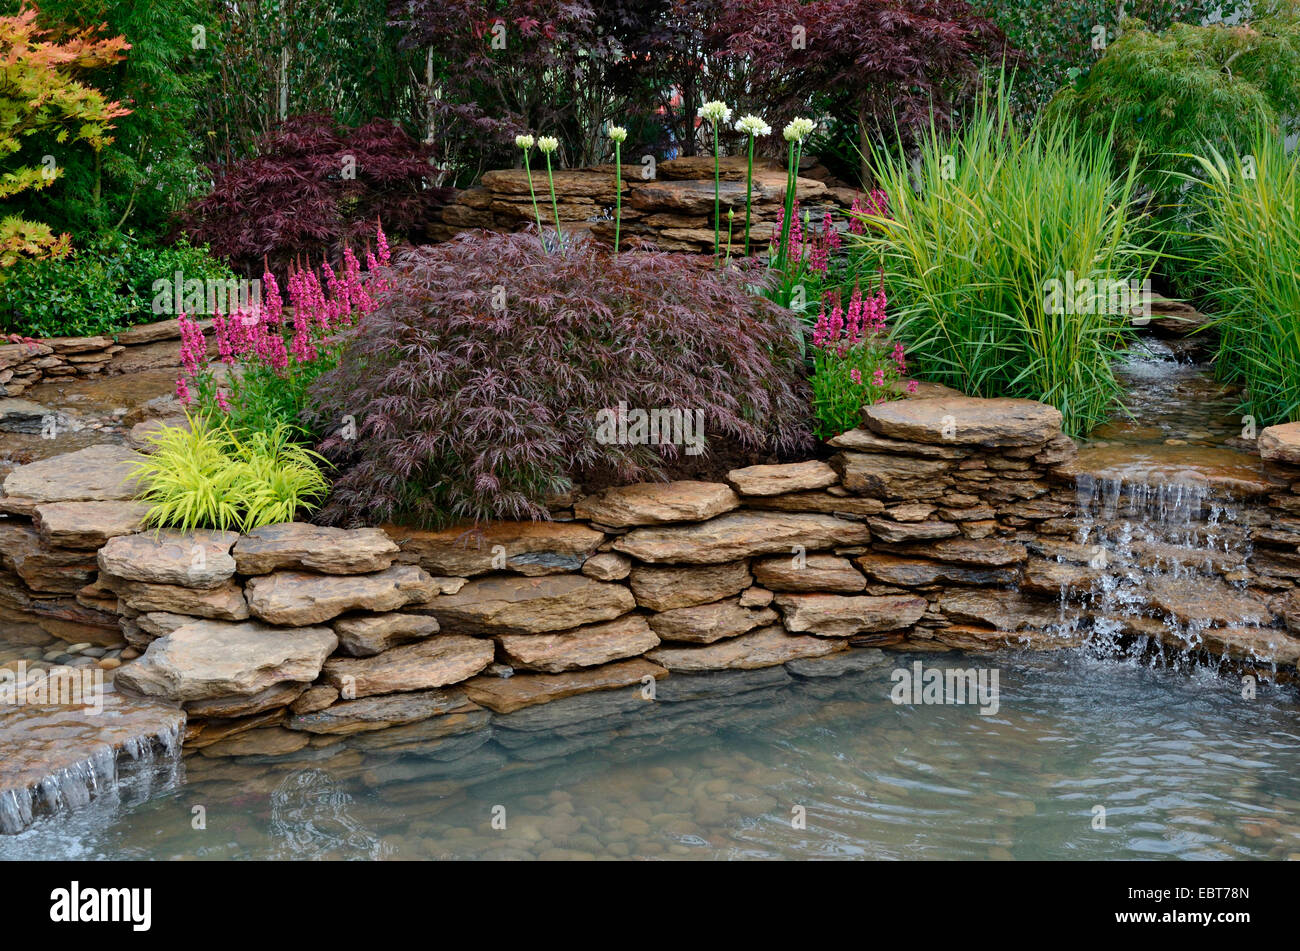 La zona di stagno in una riflessione giardino acquatico con piantate rockery e cascate Foto Stock